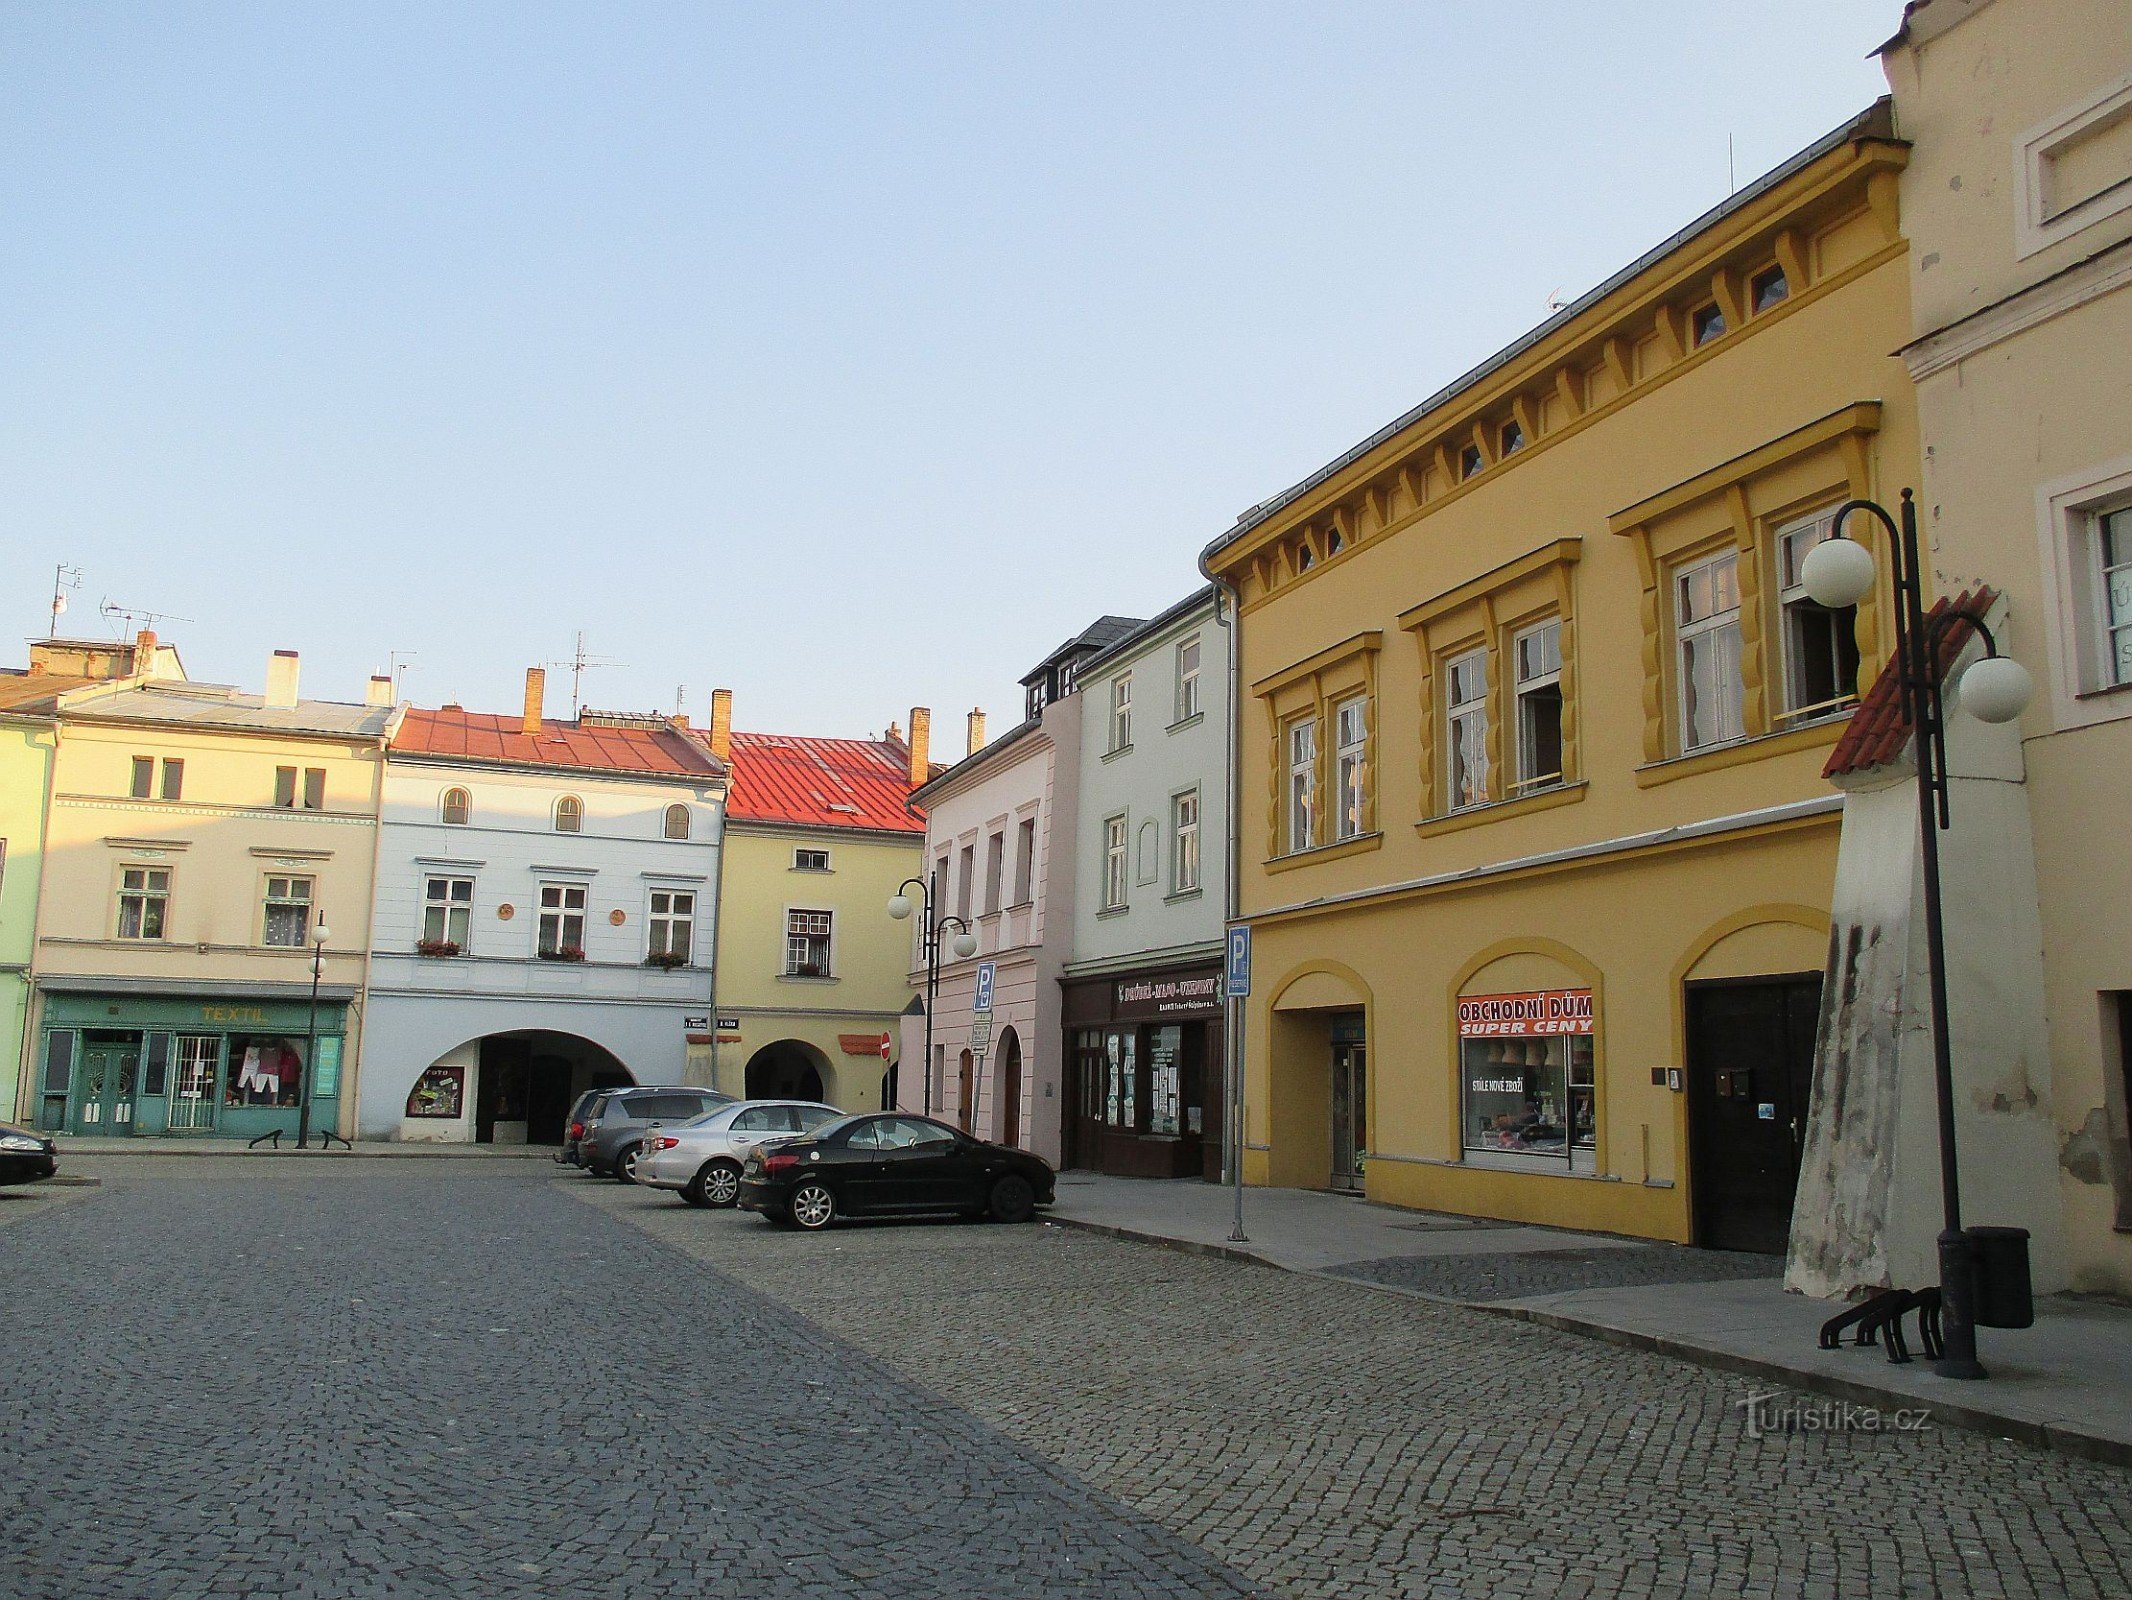 Lipník nad Bečvou - Piața TG Masaryk